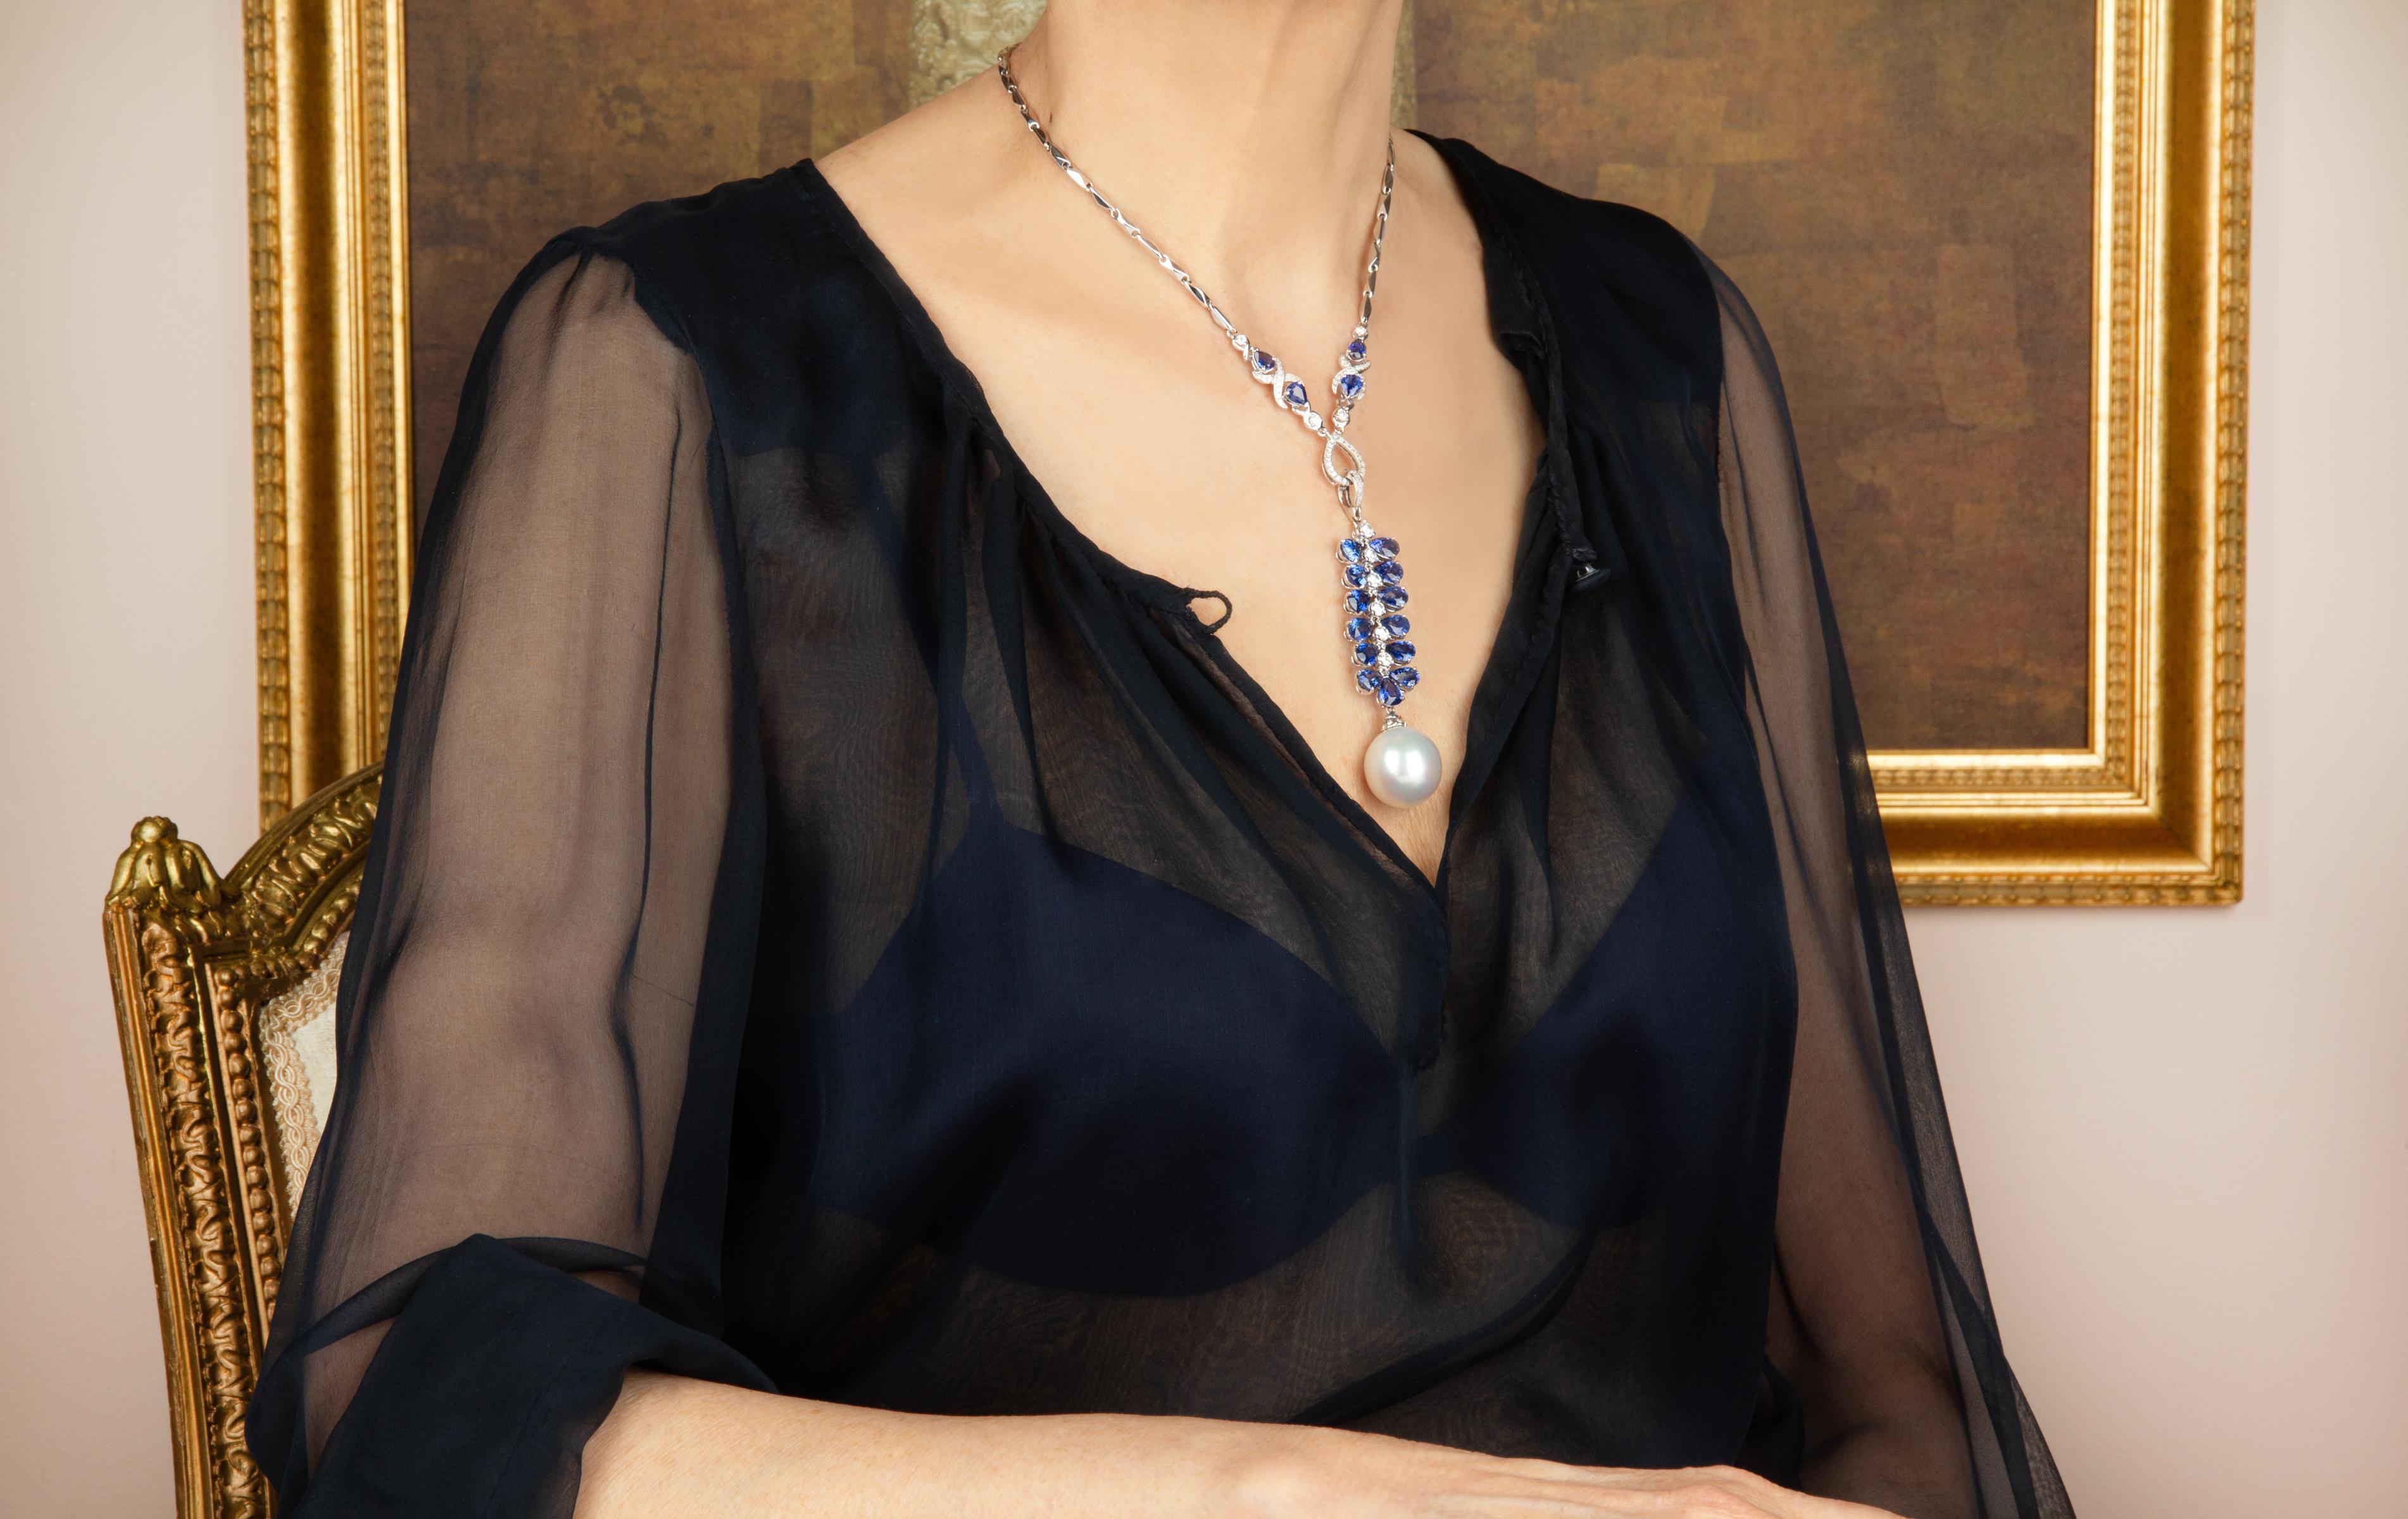 Le pendentif présente une vigne articulée de saphirs bleus de Ceylan facettés en forme de goutte, flanquée d'une colonne vertébrale de diamants ronds. Le bijou suspend une splendide perle des mers du Sud d'une taille extraordinaire : 20 x 19mm. Le